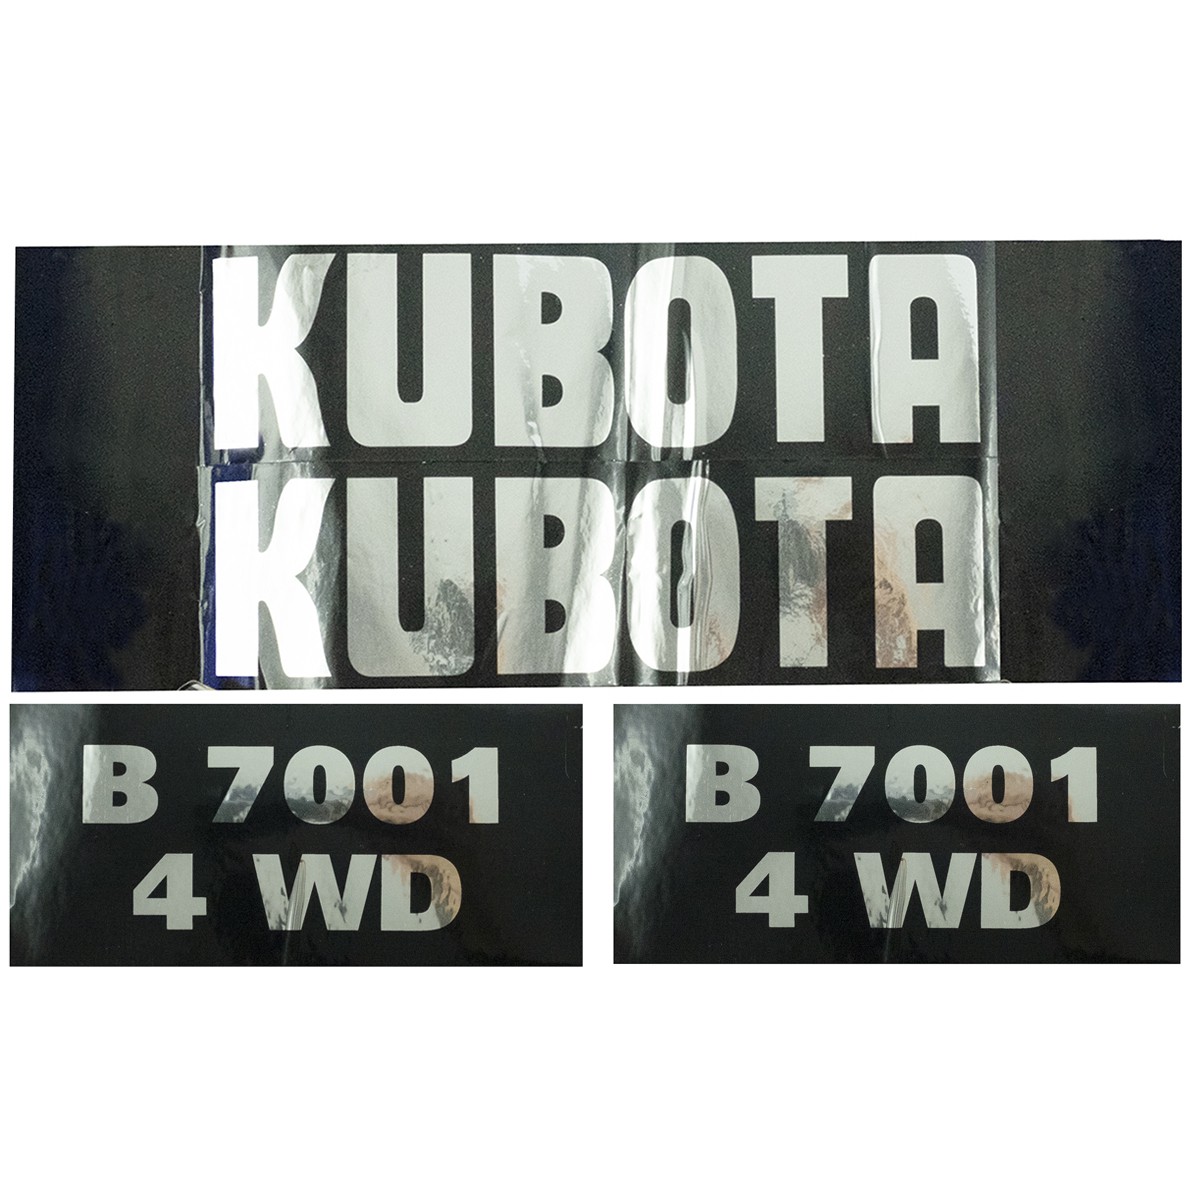 Kubota B7001 4WD Stickers